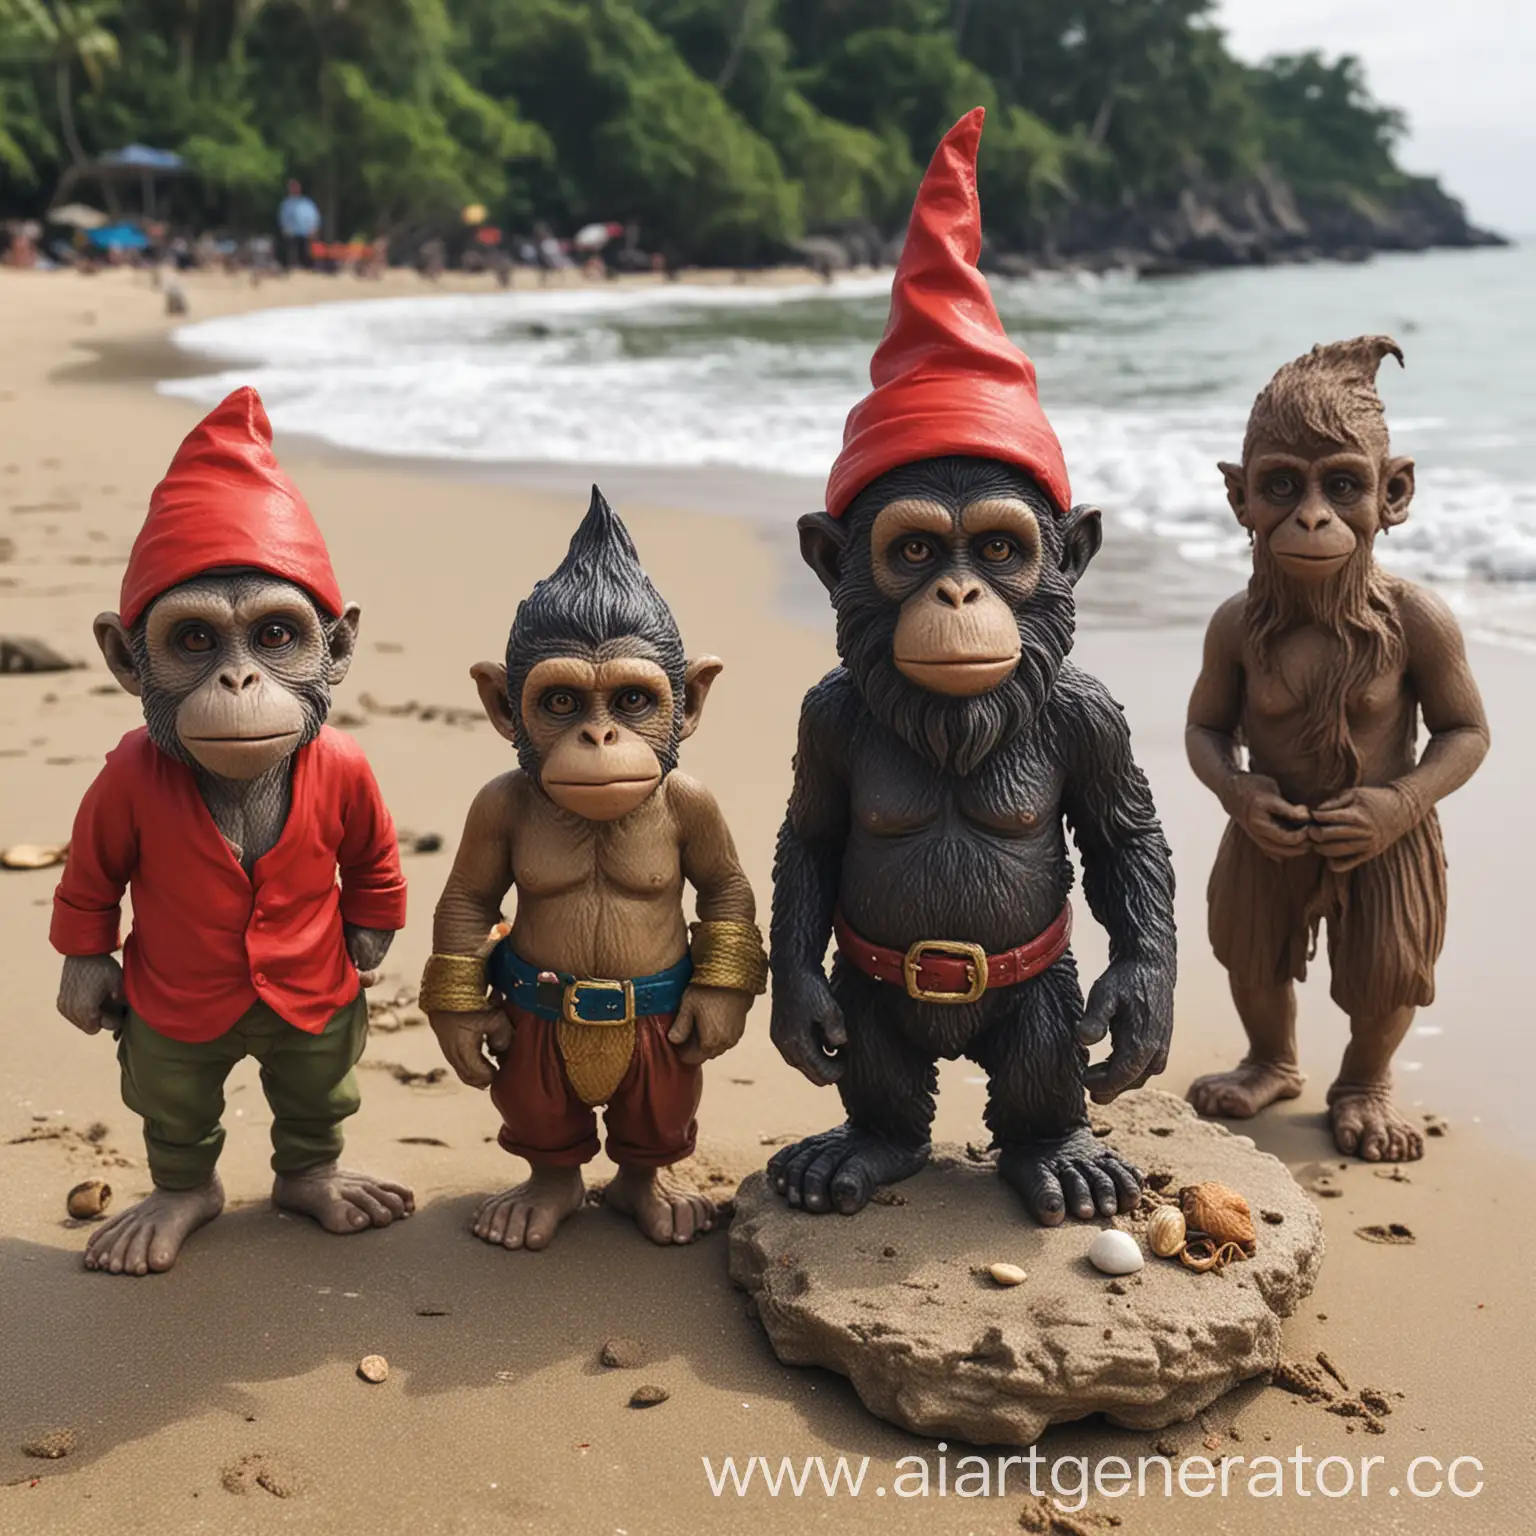 Диман живая обезьяна, Саня живая обезьяна, и злобный гном Анрюха на пляже